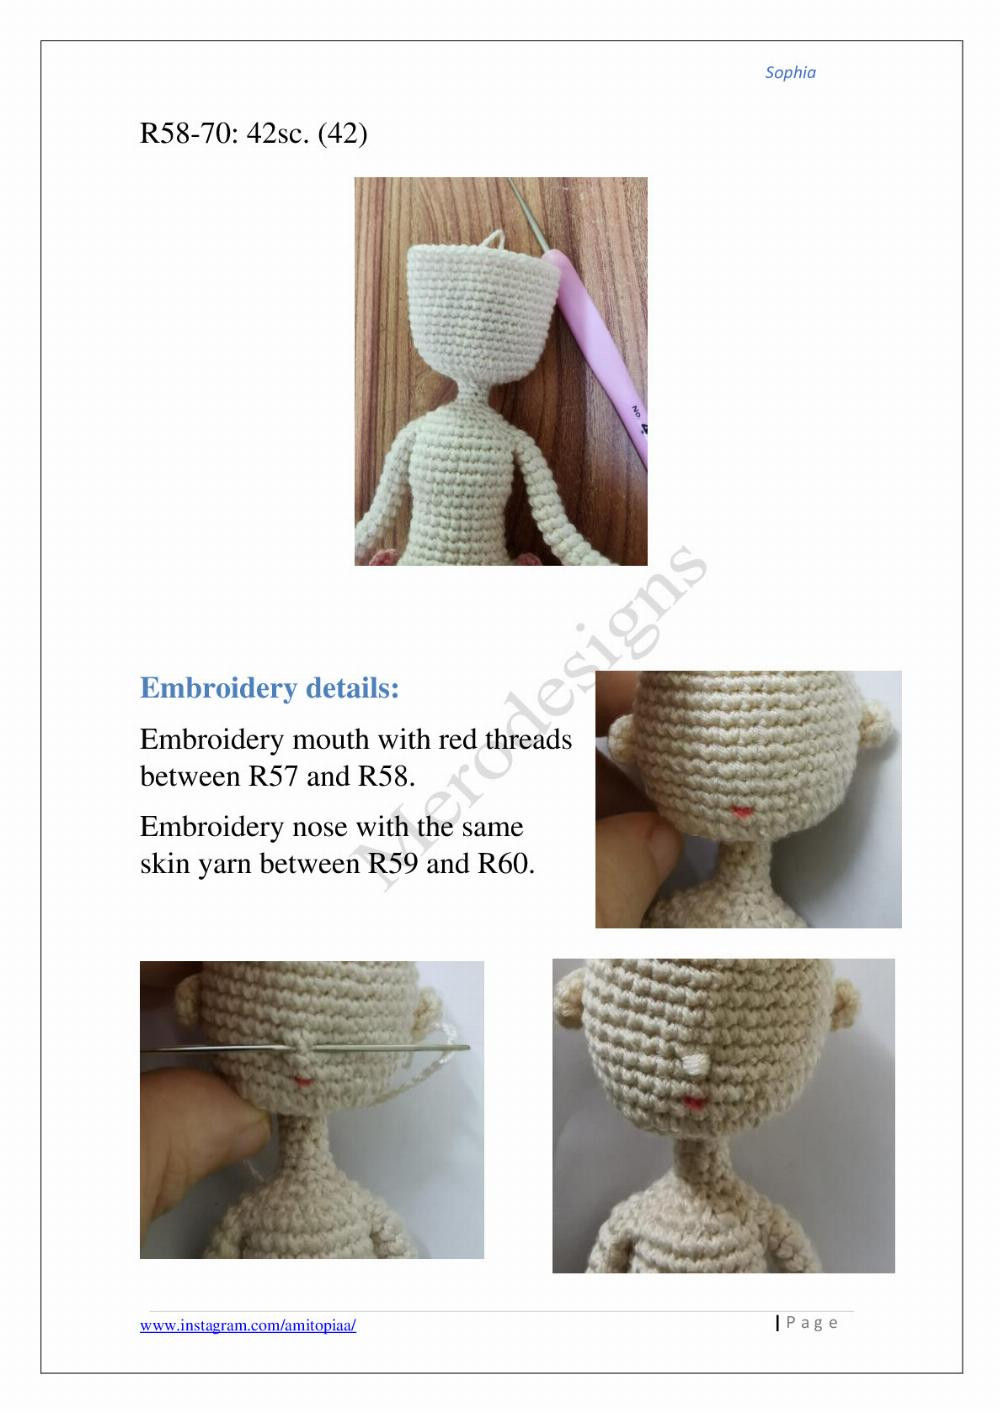 Sophia crochet pattern